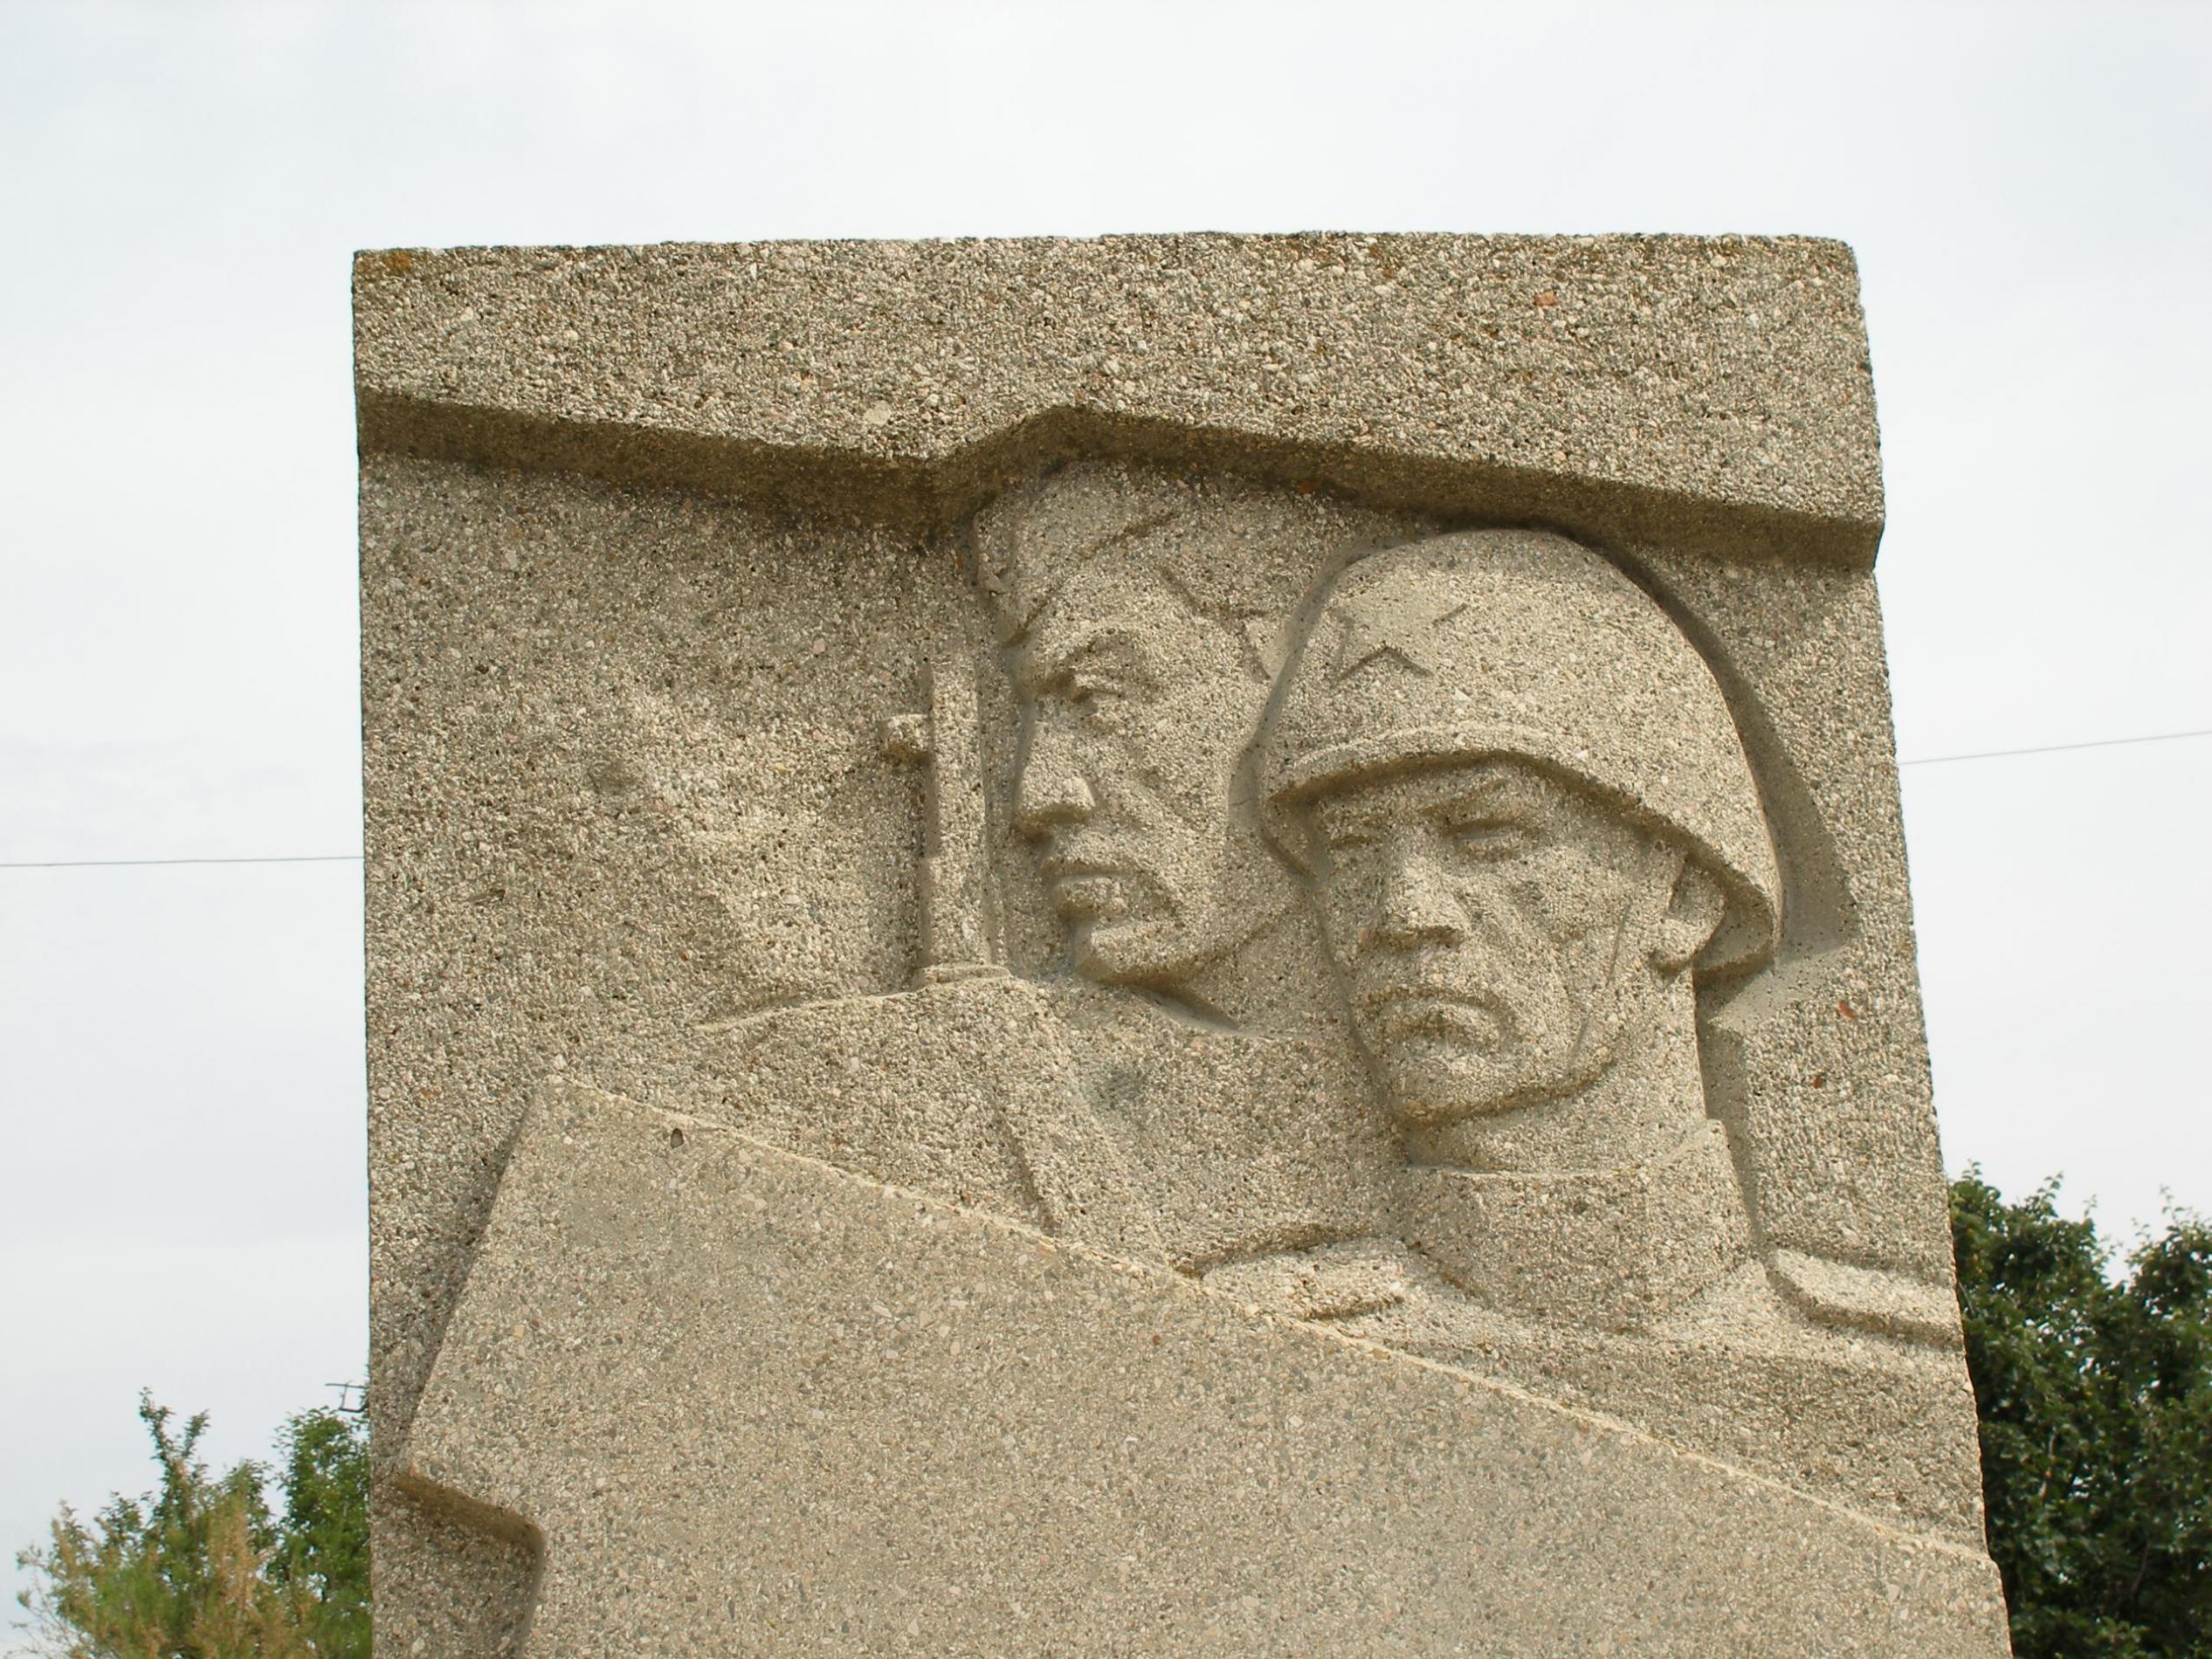 Памятник Воинам однсельчанам - с. Орловка (Мамашай)